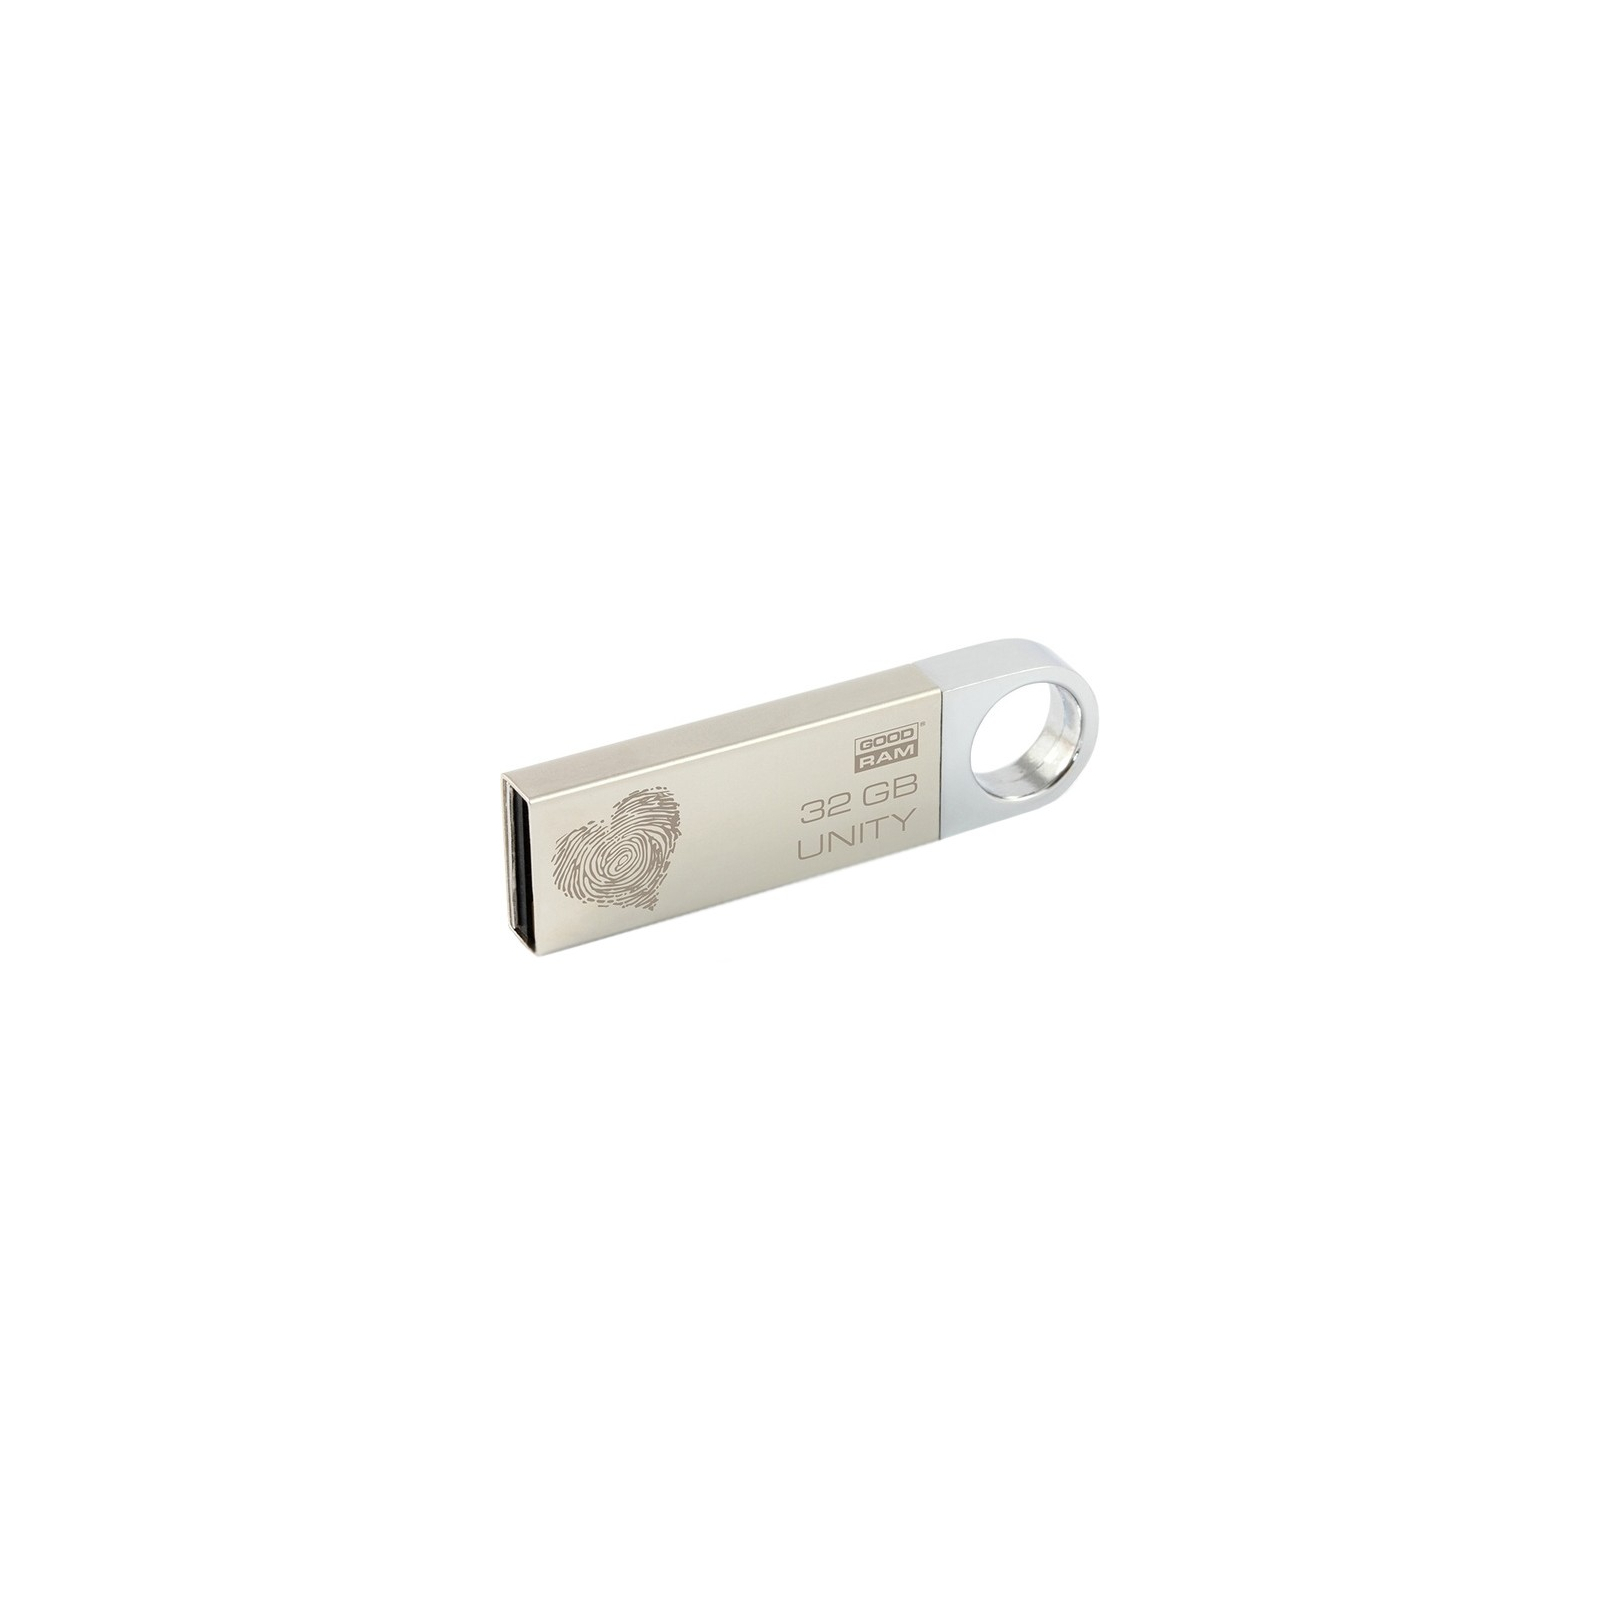 USB флеш накопитель Goodram 32GB Unity Valentine USB 2.0 (PD32GH2GRUNSR9+V)